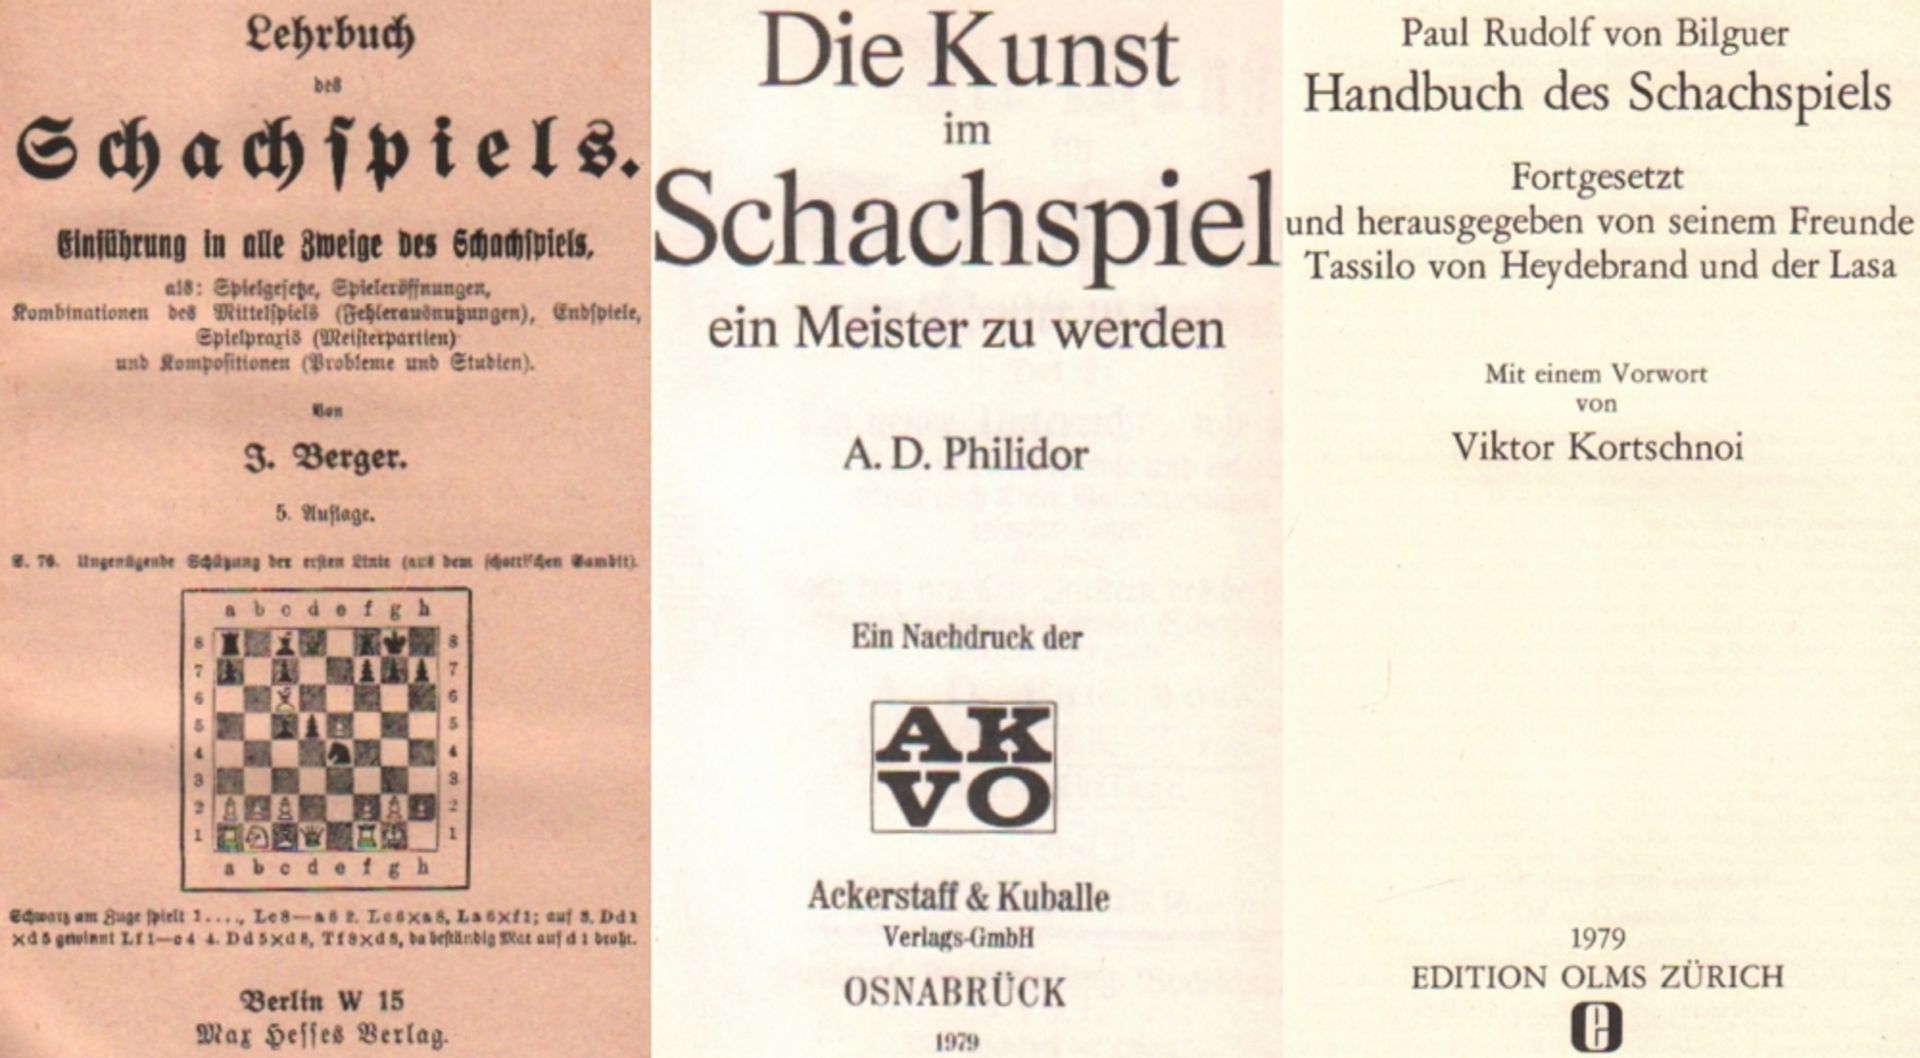 Bilguer, P. R. v. Handbuch des Schachspiels. Fortgesetzt … von Heydebrand und der Lasa. Nachdruck